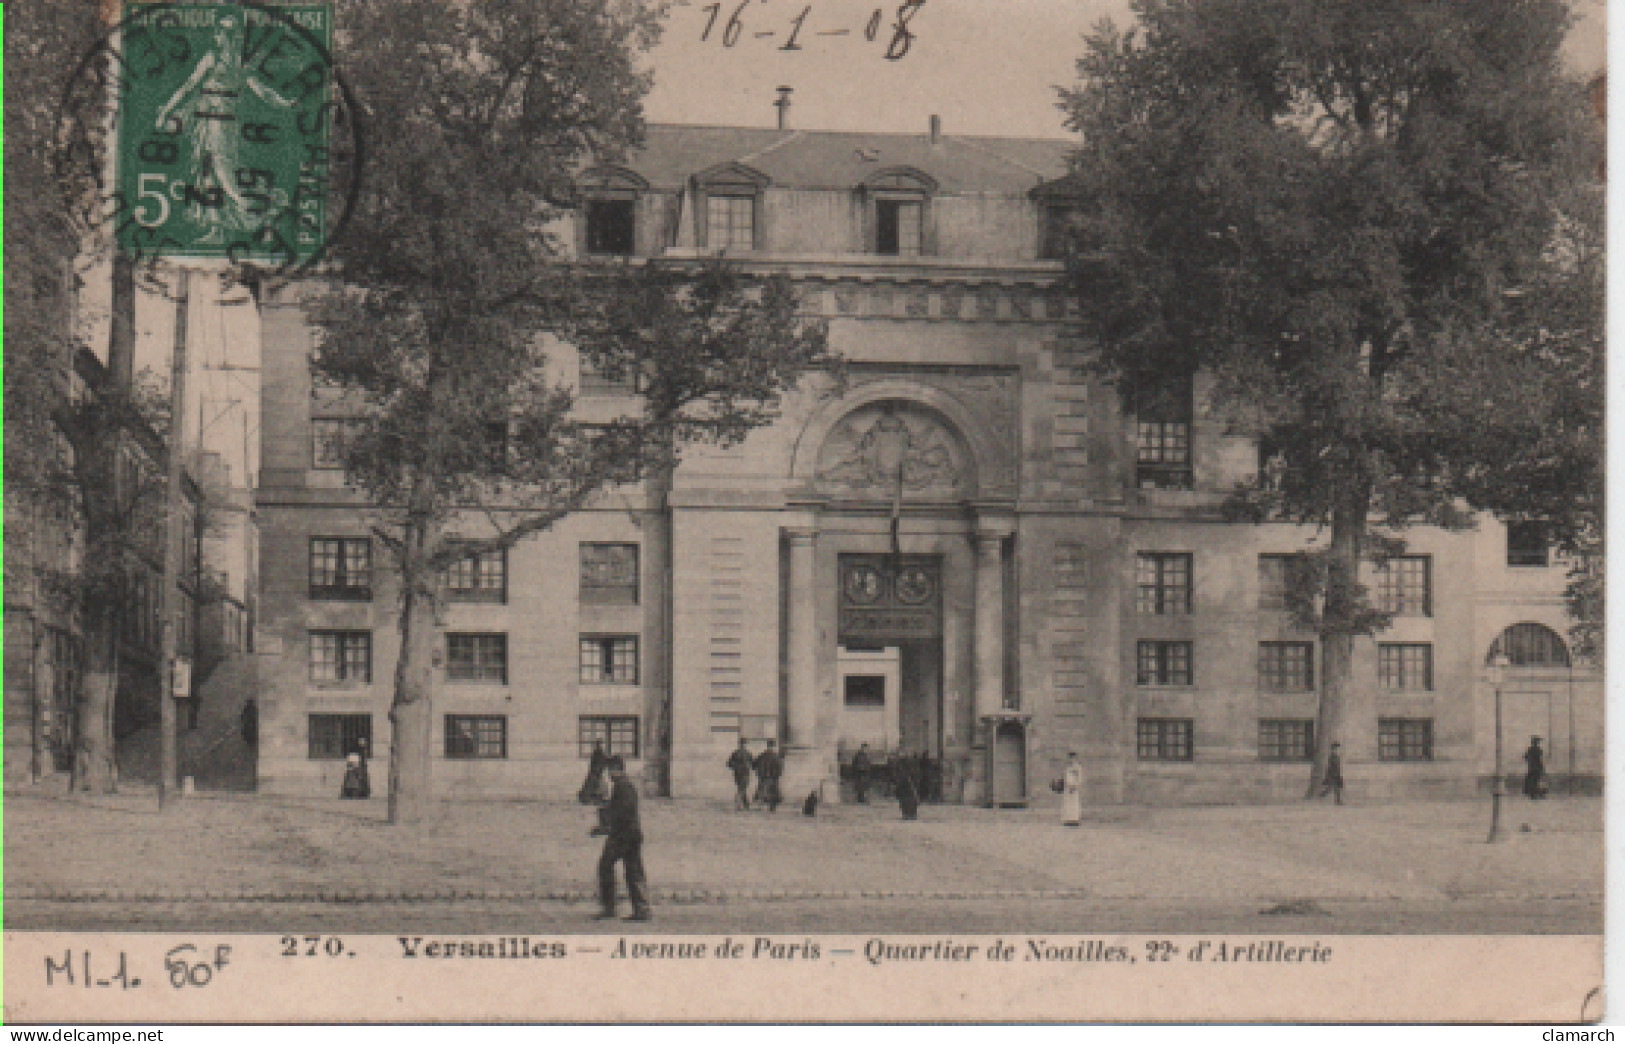 YVELINES-Versailles-Avenue De Paris-Quartier De Noailles, 22è D'Artillerie - 270 - Boulogne Sur Mer